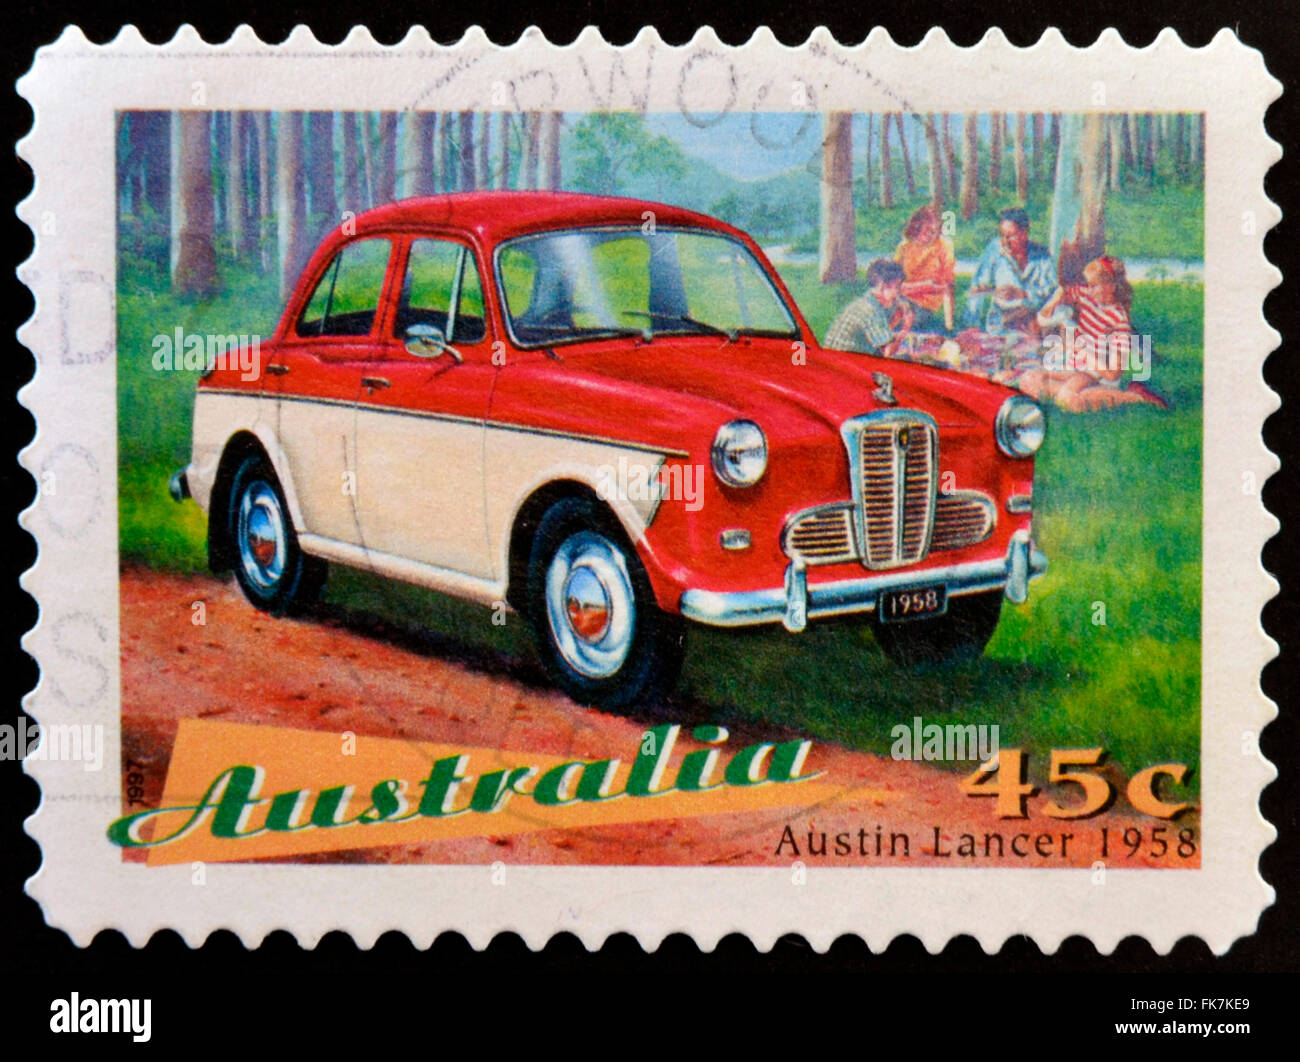 L'AUSTRALIE - circa 1997 : timbre imprimé en Australie montre Austin Lancer, Classic Car à partir de 1958, vers 1997 Banque D'Images